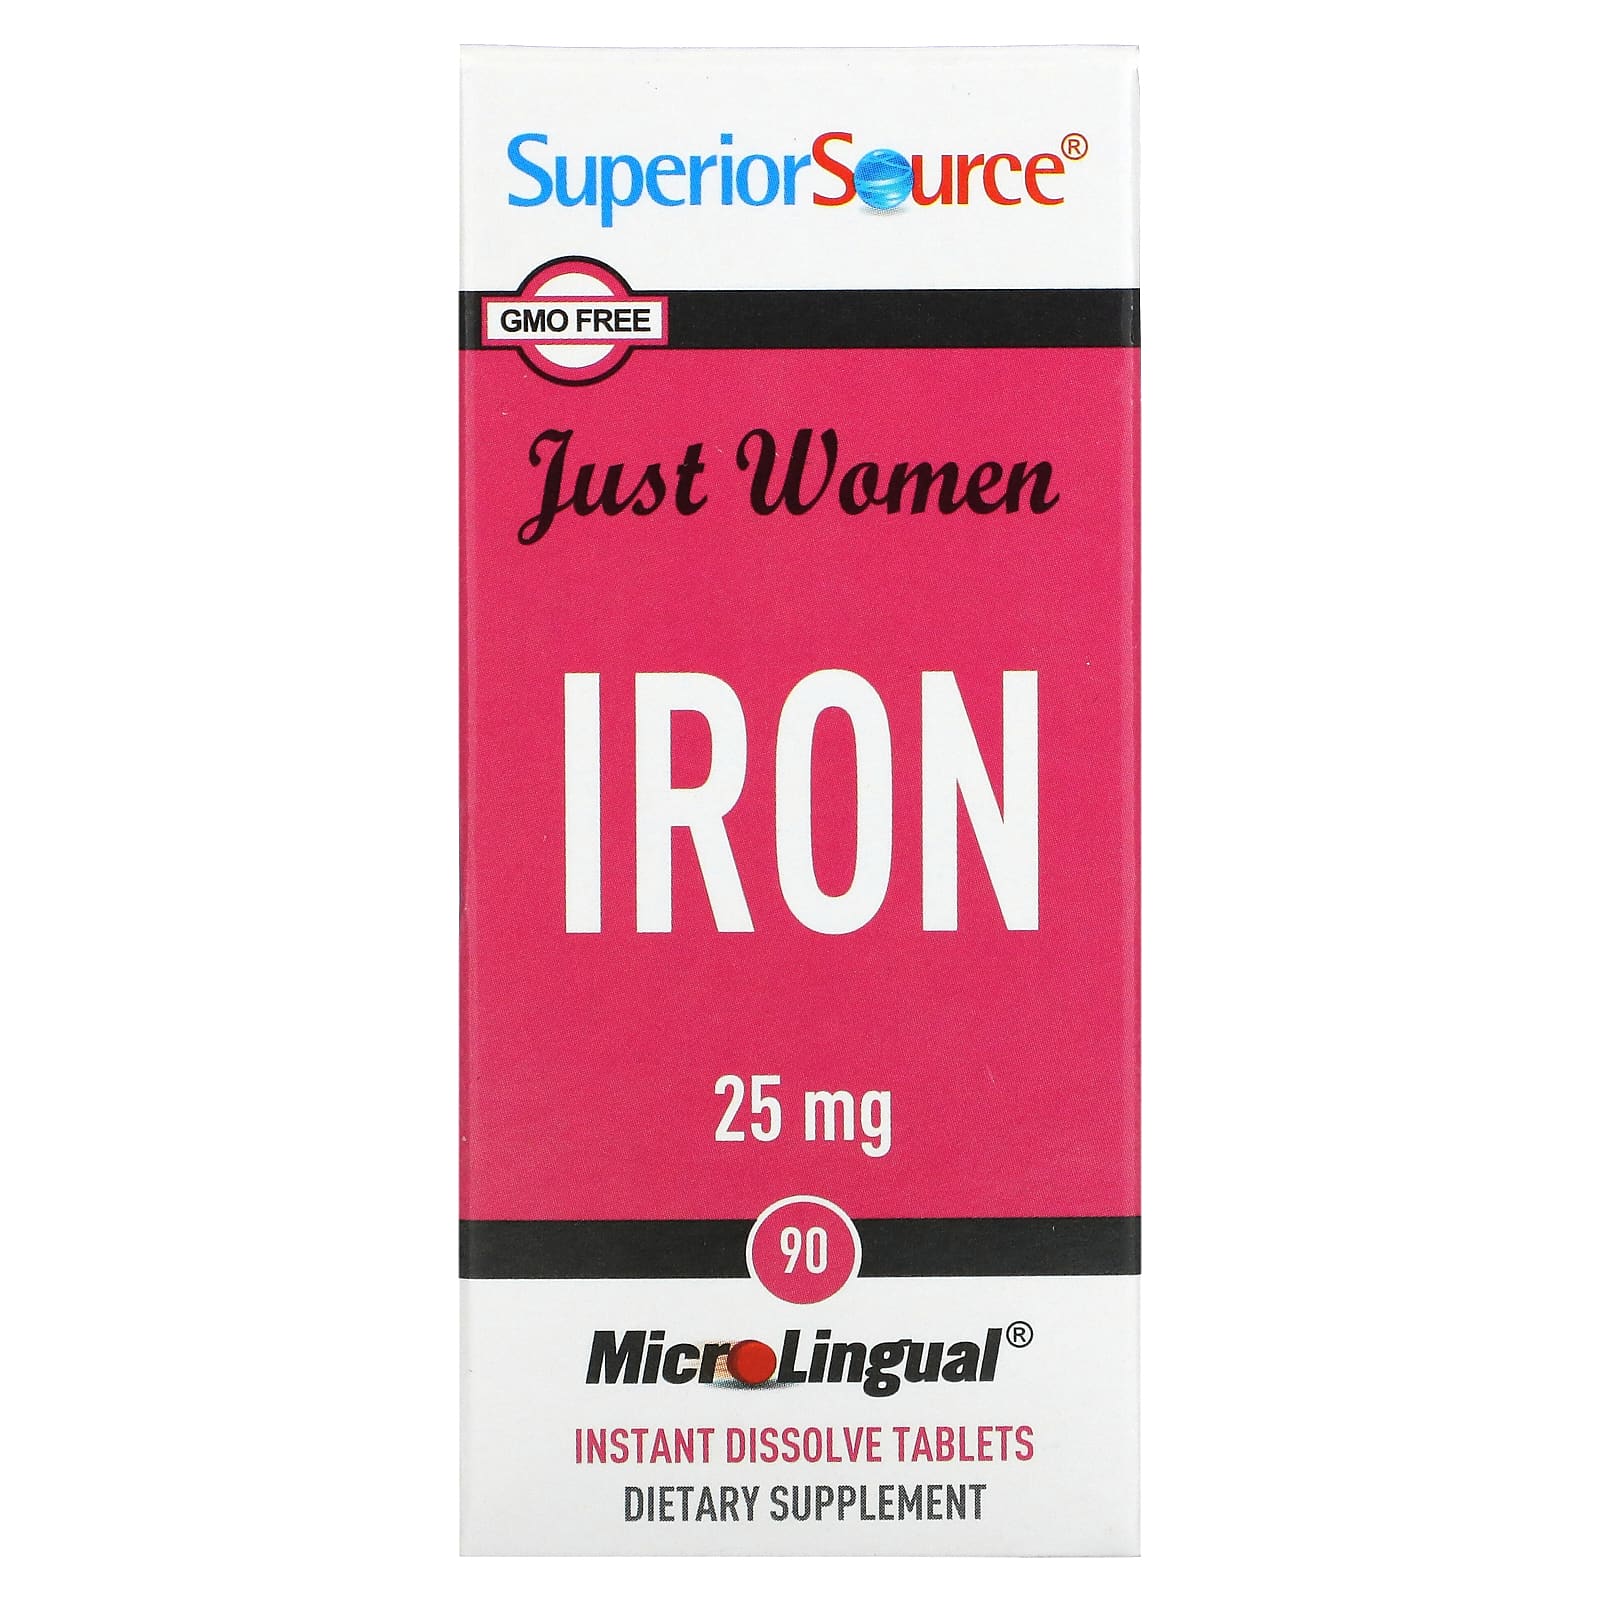 Superior Source Just Women железо 25 мг 90 микролингвальных быстрорастворимых таблеток superior source c 500 мг острый апельсин для рассасывания без сахара 90 таблеток